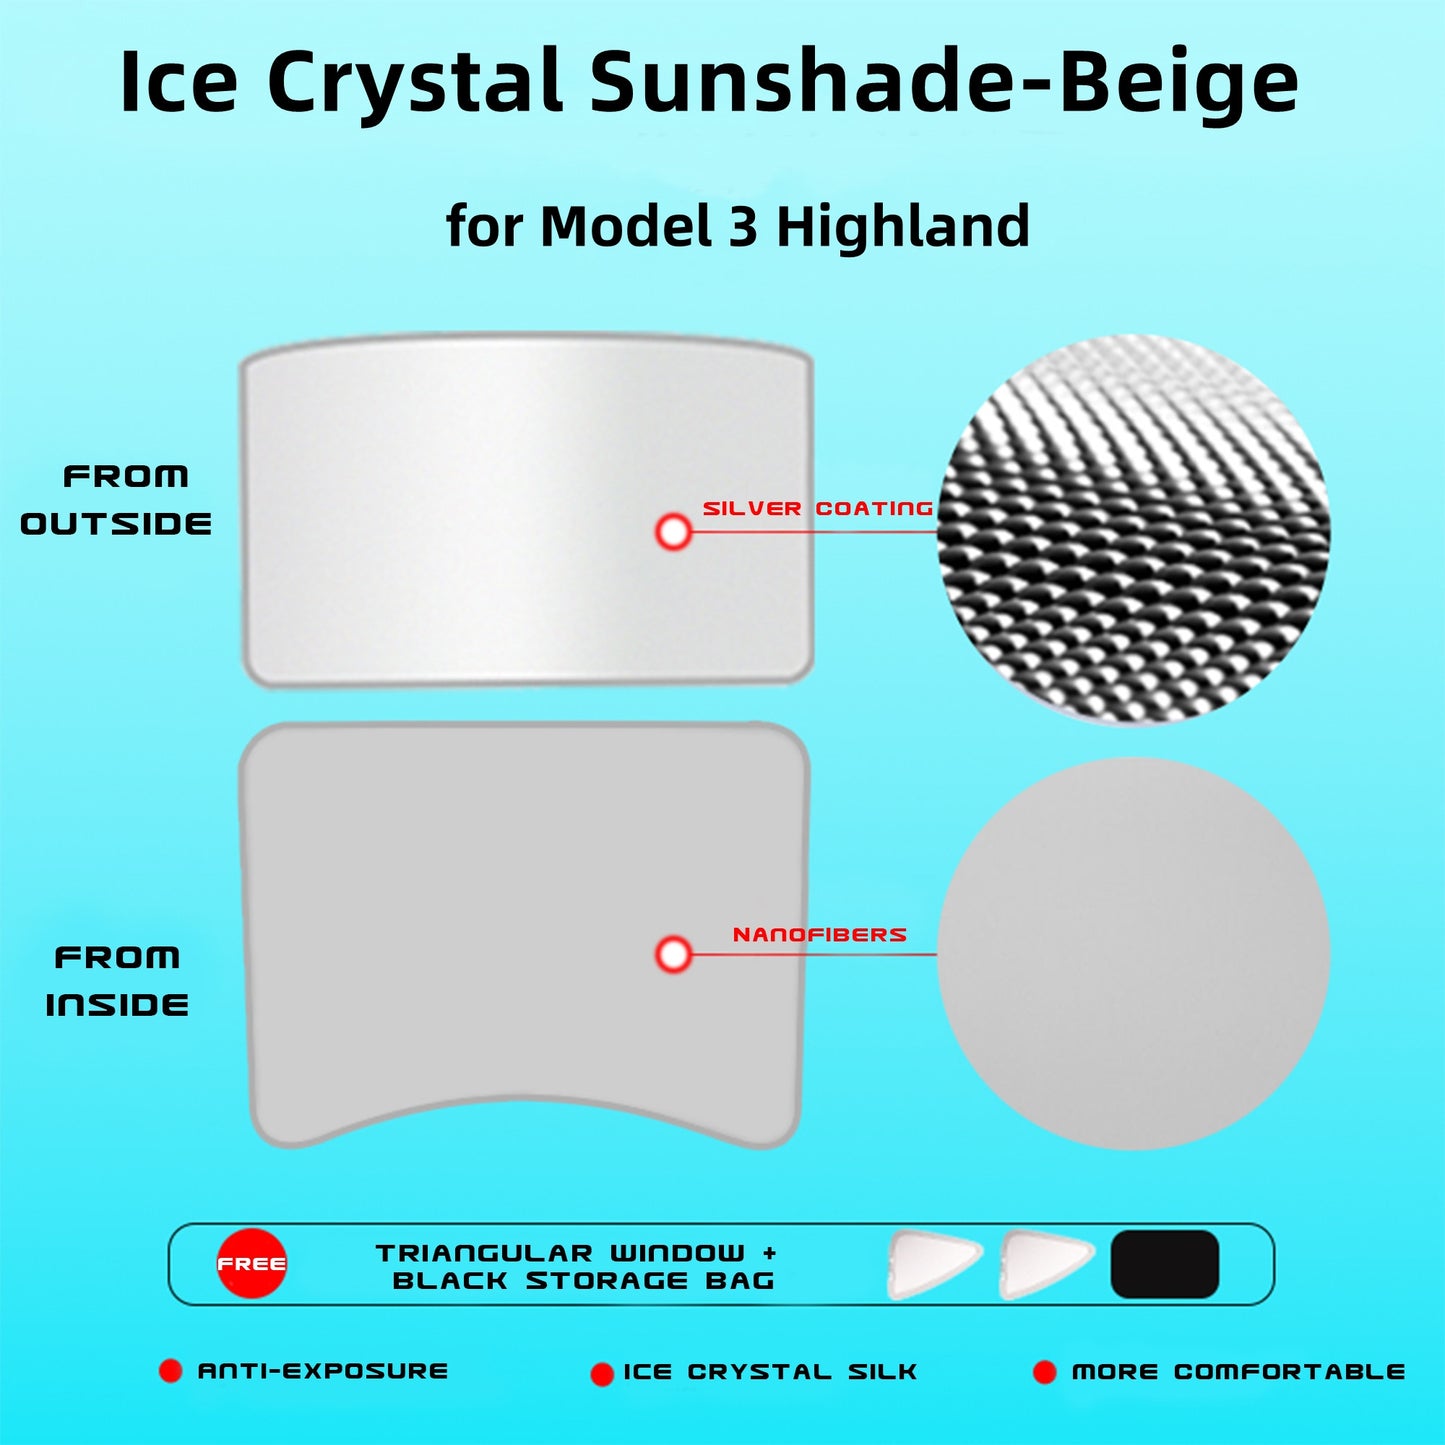 Schiebedach Sonnenschirme mit UV/Wärmedämmung Film Abdeckung Set Eiskristall Faltbare Schattierungen für Modell 3 und Modell 3 Highland